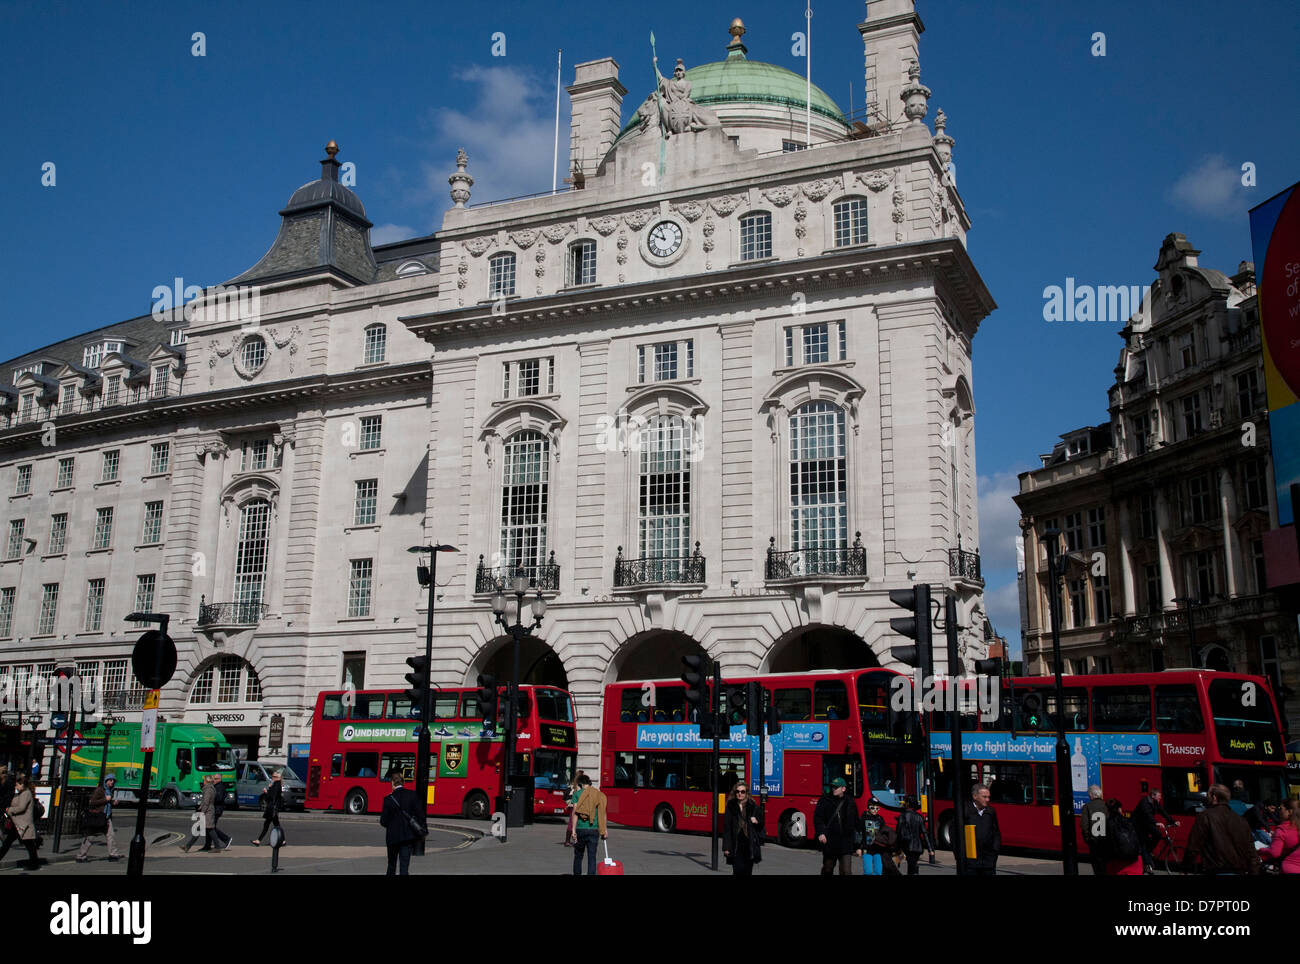 Avis de Piccadilly Circus montrant les bus londoniens, West End, Londres, Angleterre, Royaume-Uni Banque D'Images